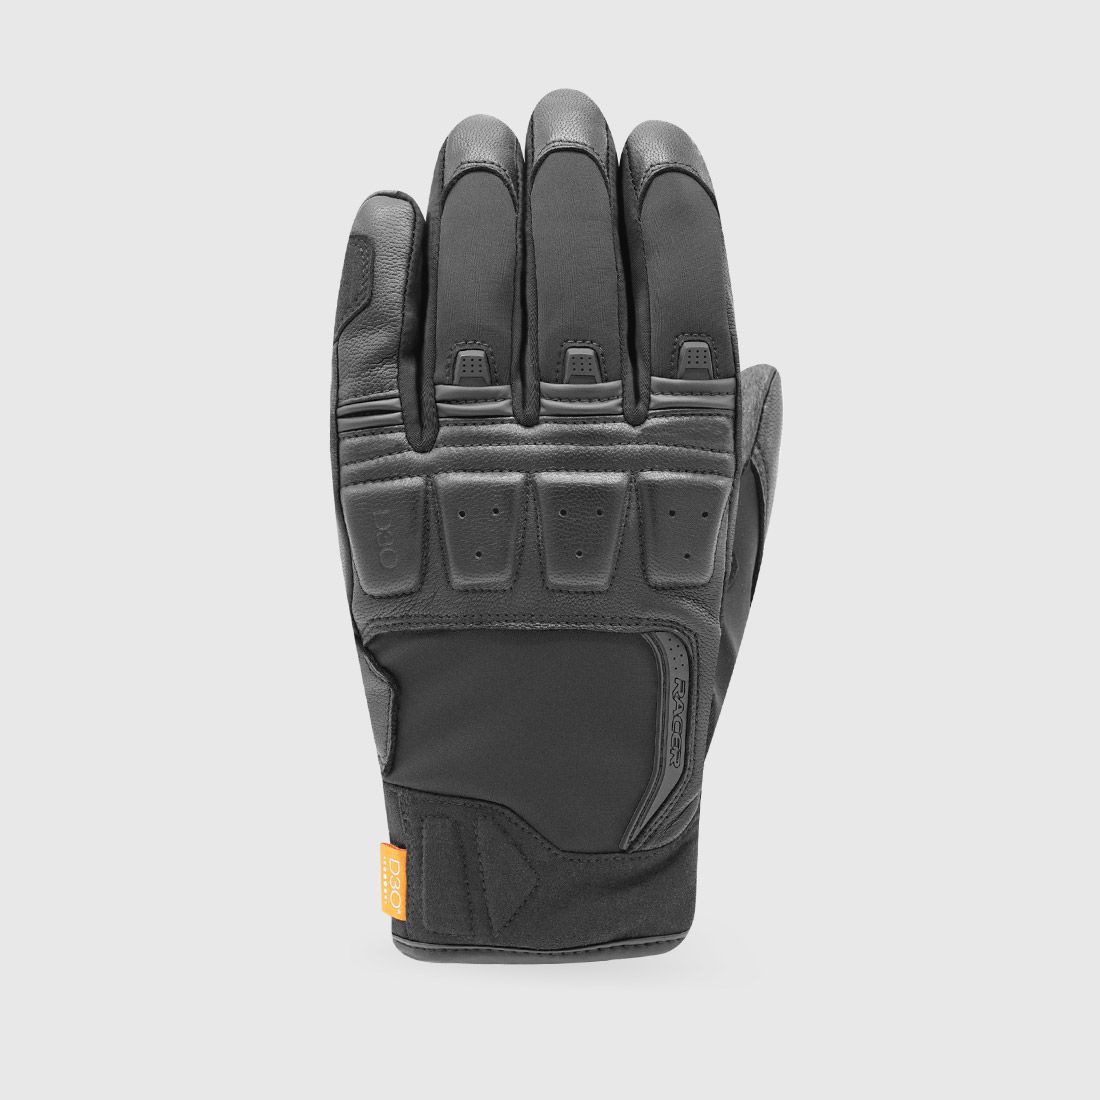 gloves RONIN WINTER, RACER (black)